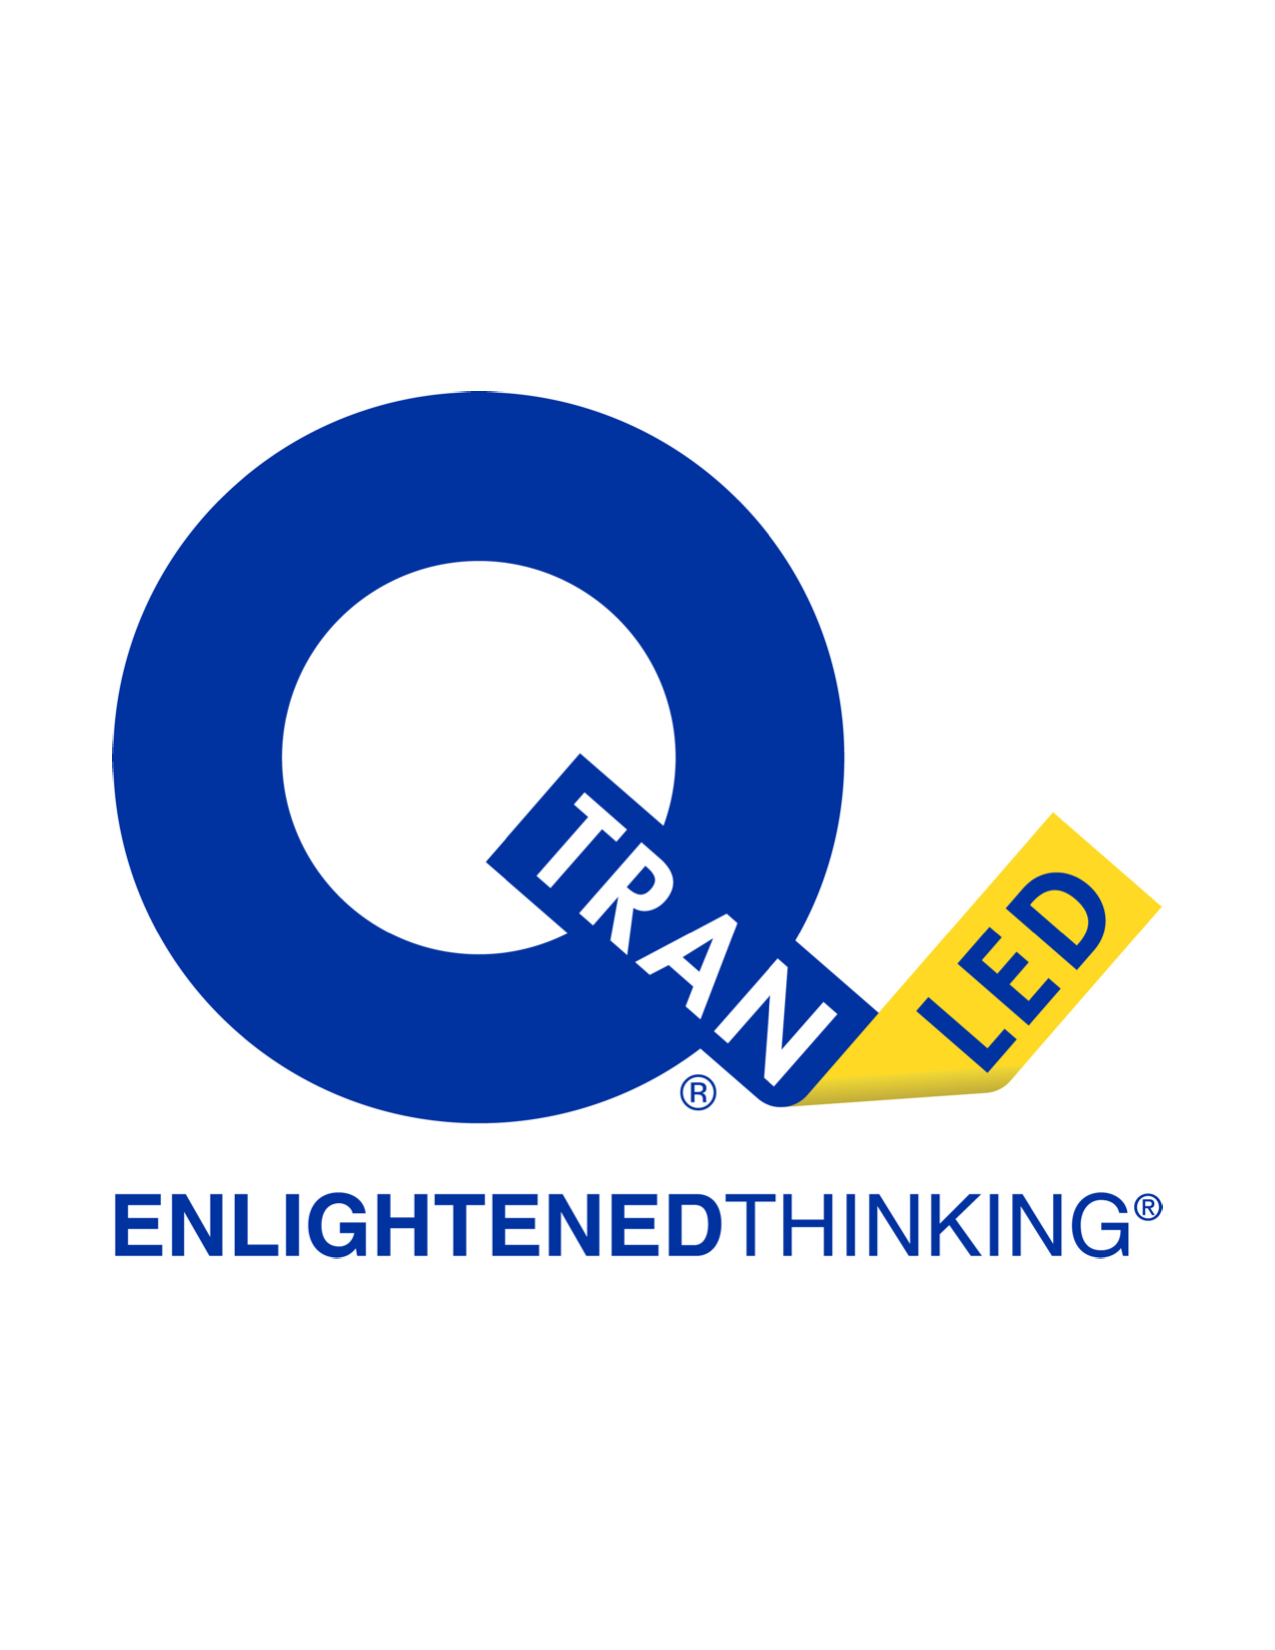 Q-Tran Logo - Enlightened Thinking